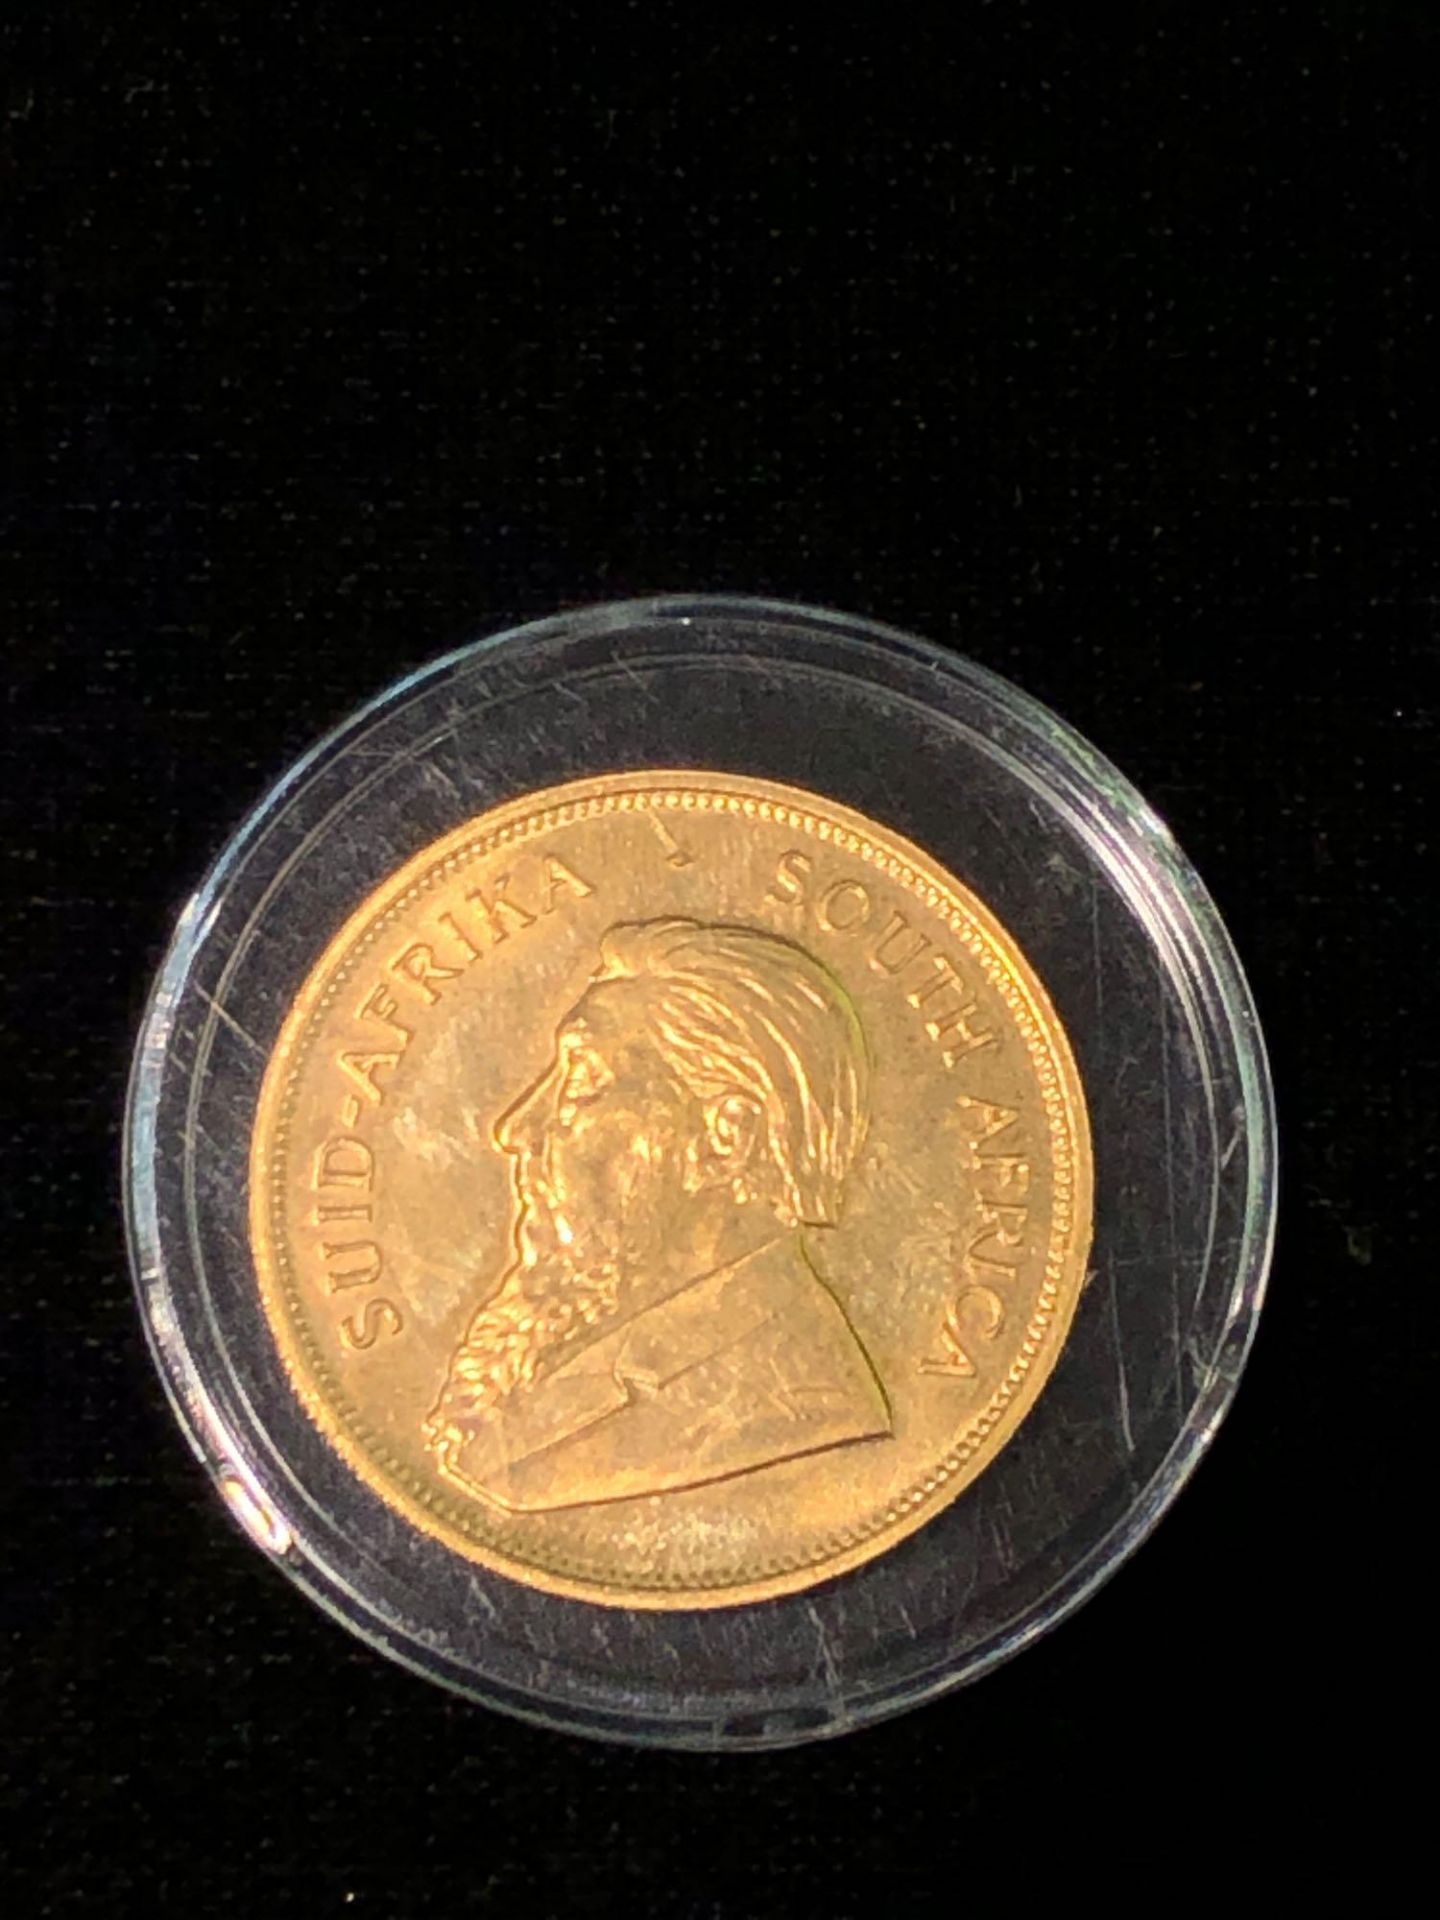 1978 1 OZT FINE GOLD KRUGERRAND COIN